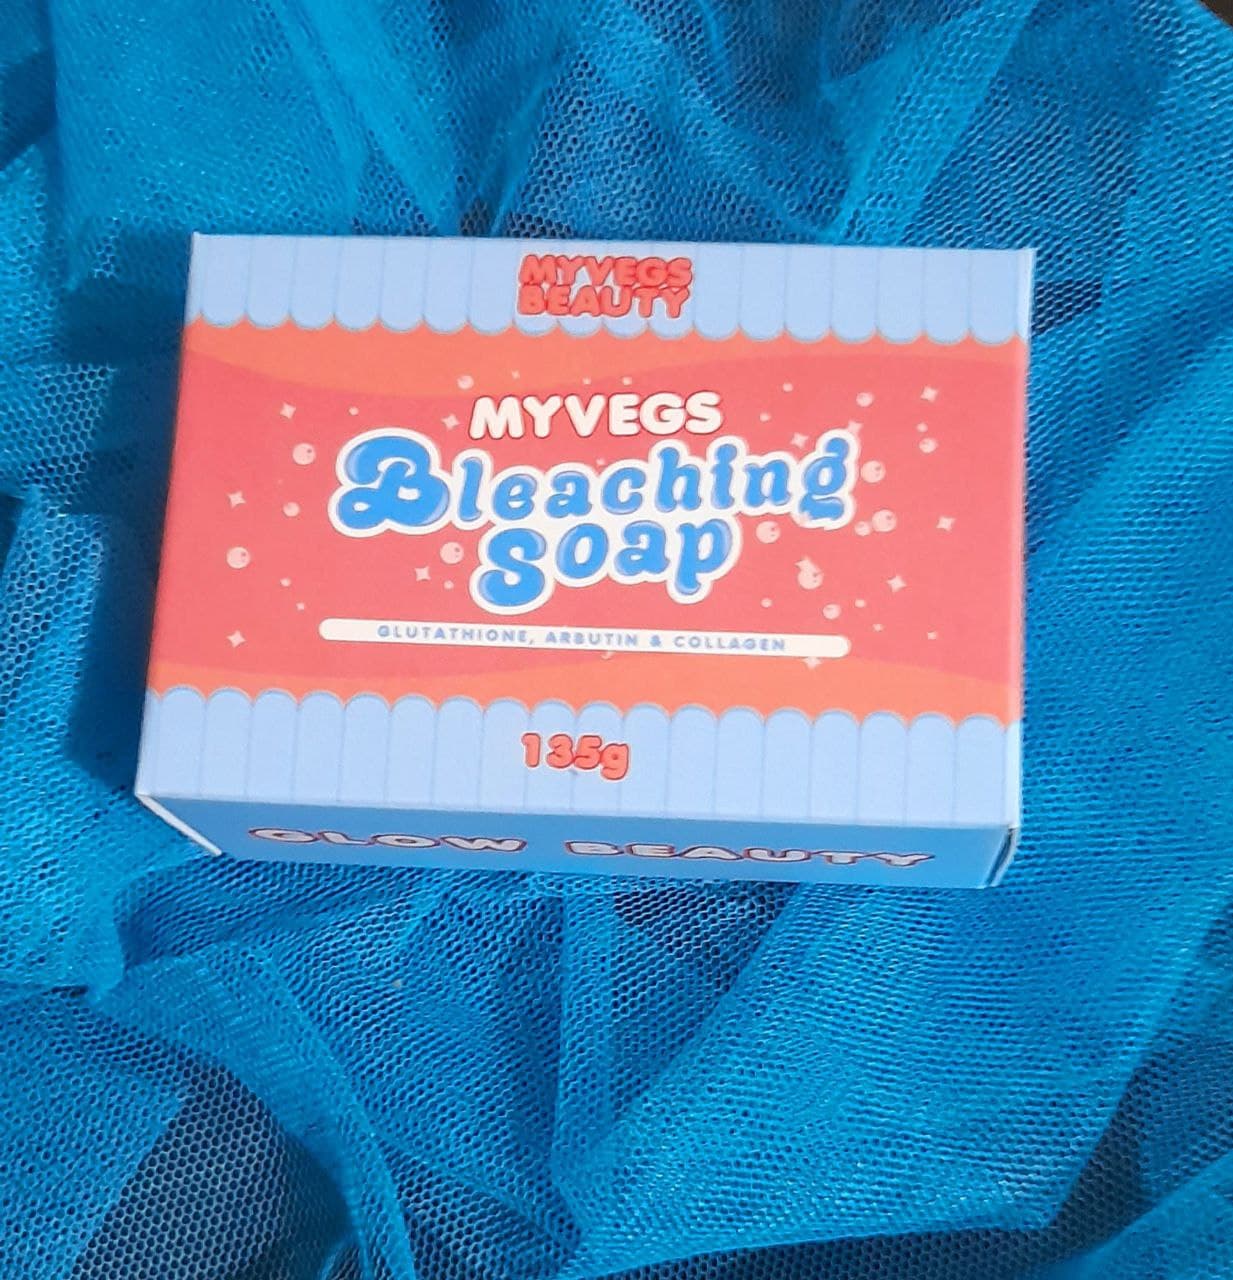 Myvegs Beauty Bleaching Soap 135g